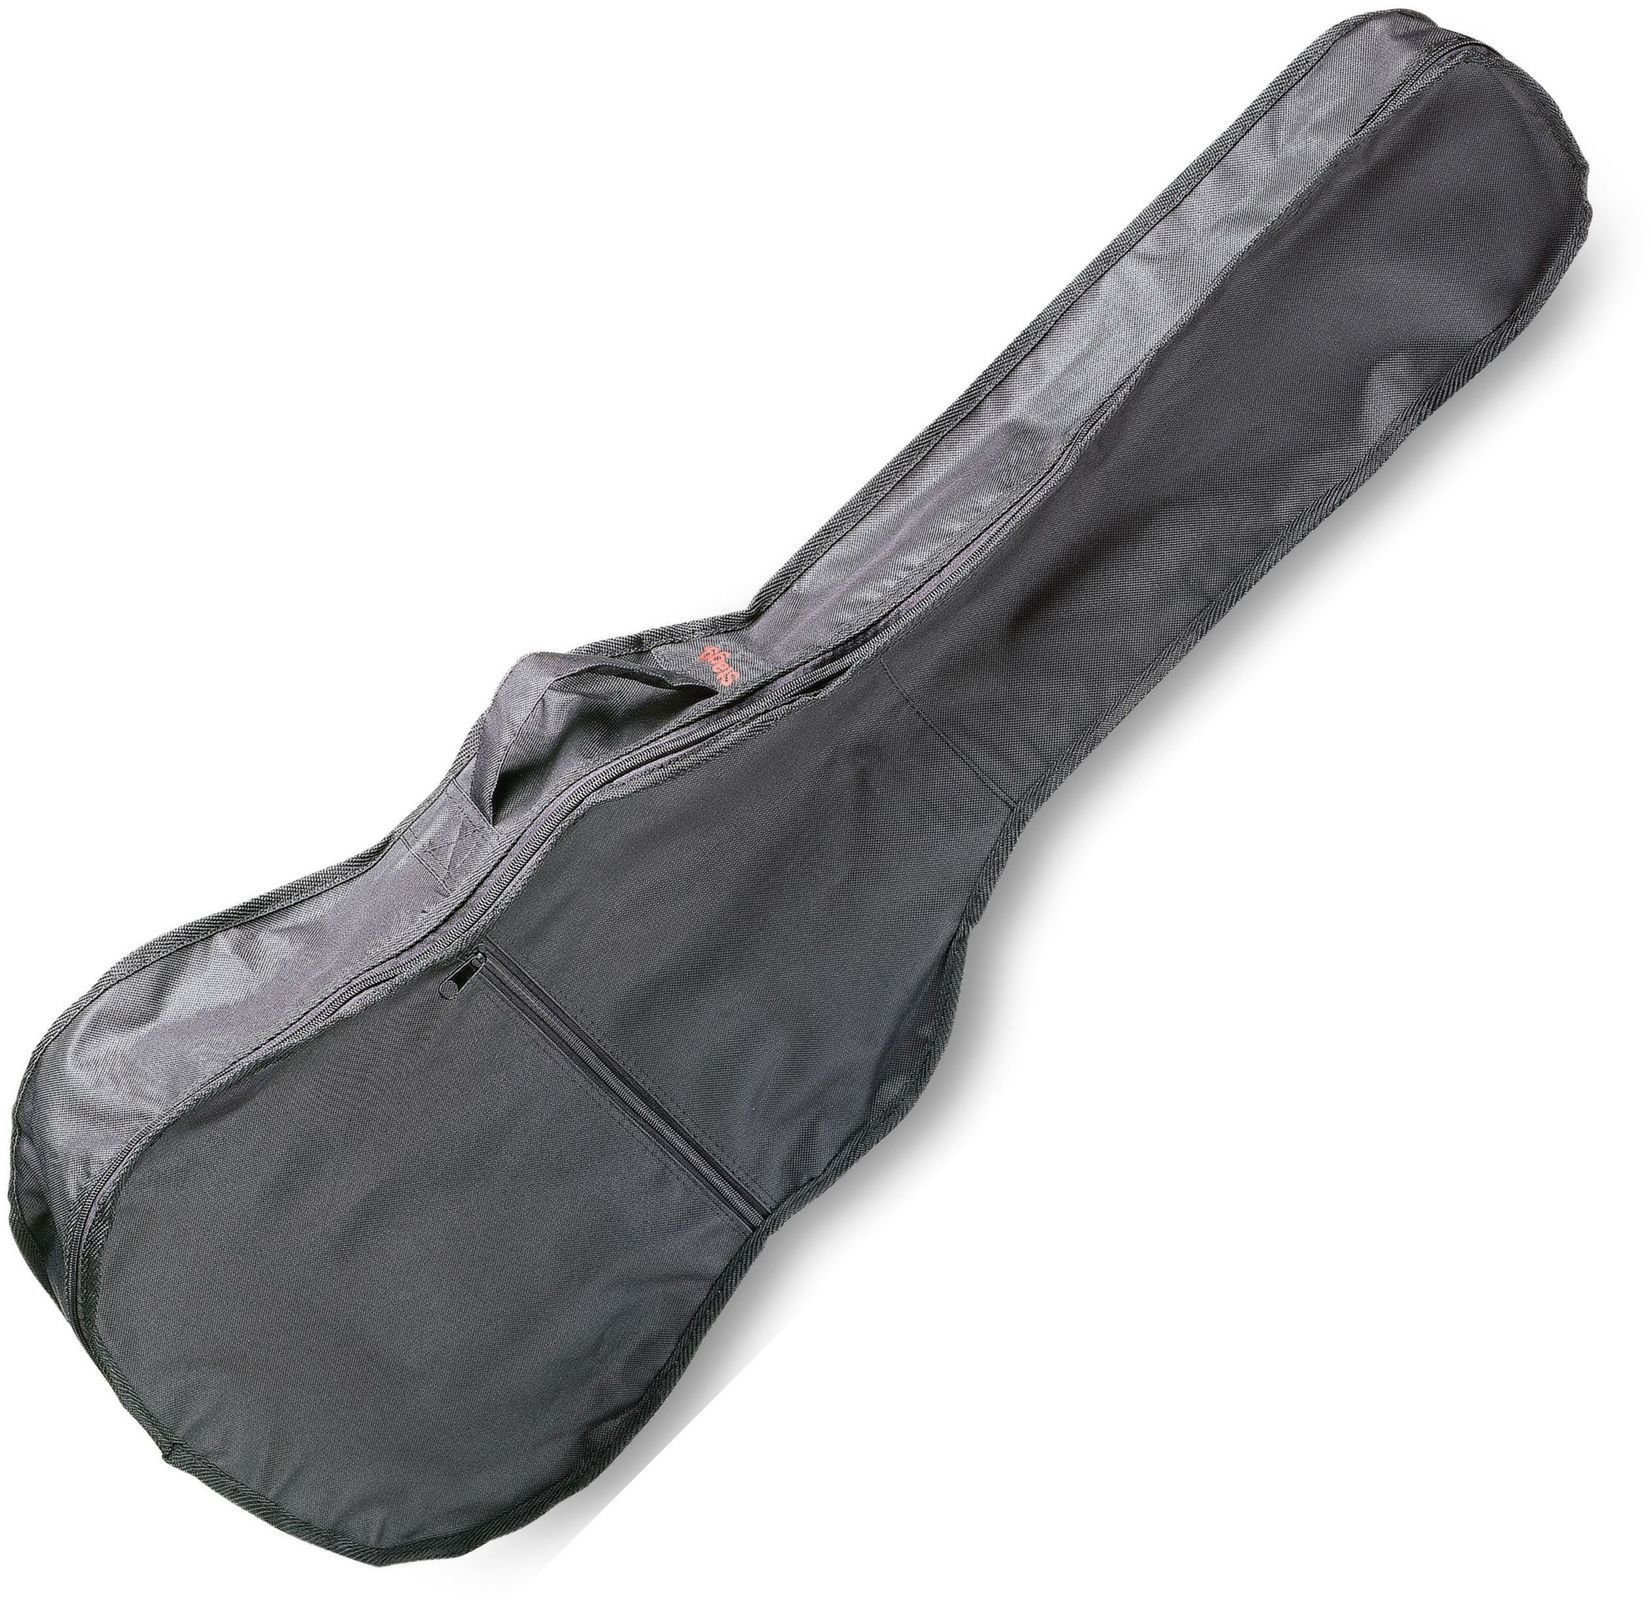 Tasche für Konzertgitarre, Gigbag für Konzertgitarre Stagg STB-1 C3 Tasche für Konzertgitarre, Gigbag für Konzertgitarre Black